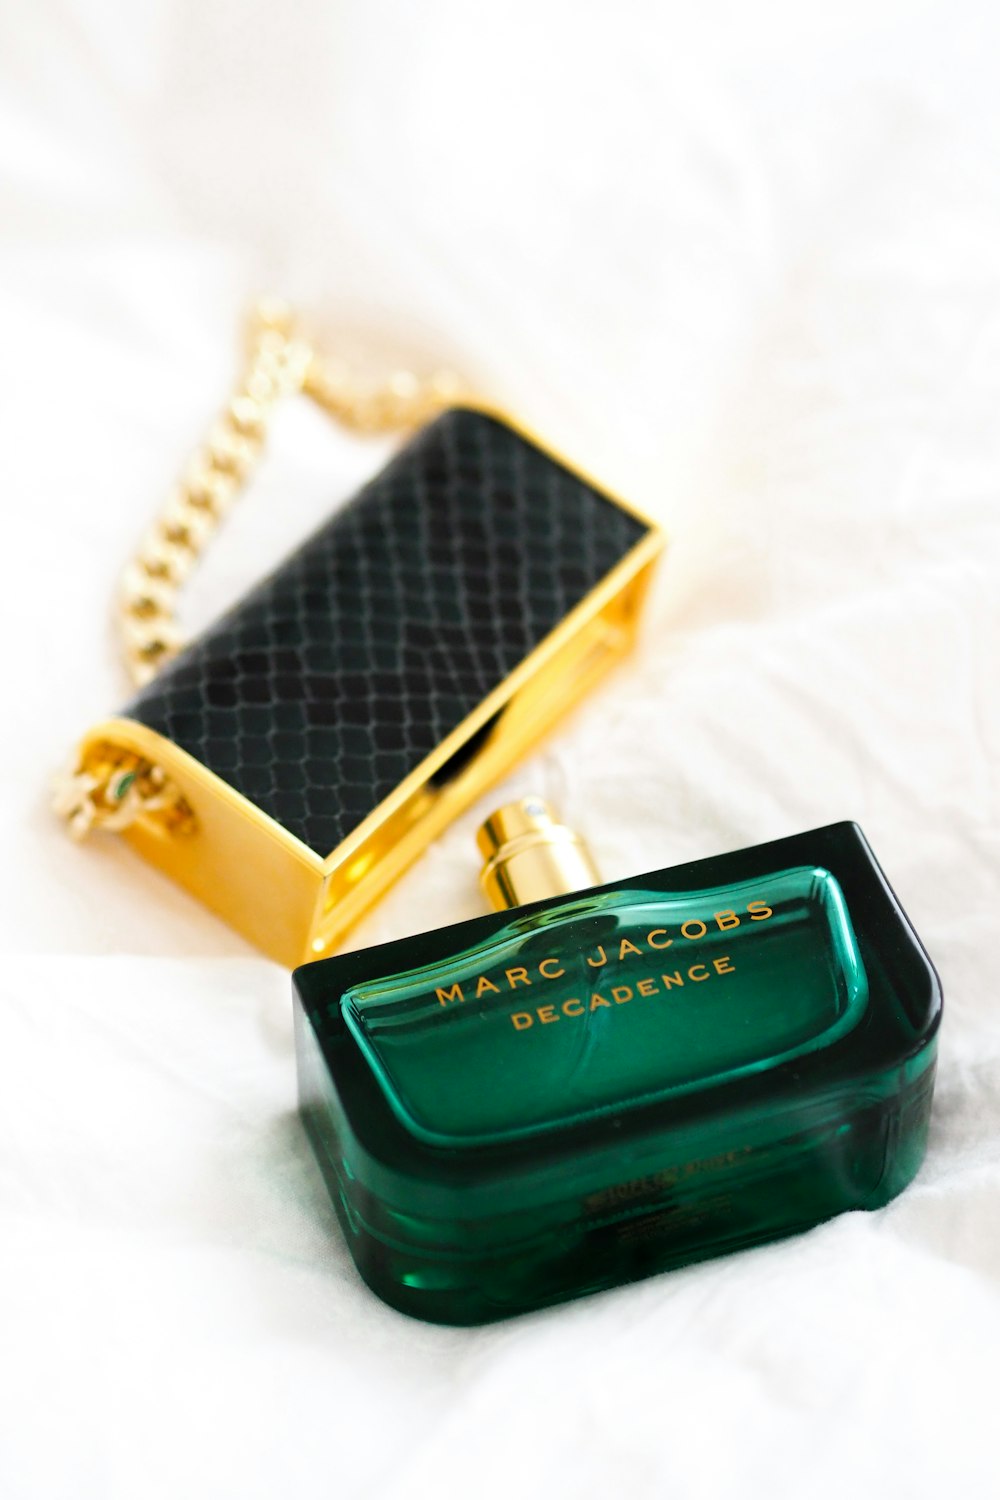 Black and gold perfume bottle photo – Free Cosmetics Image on Unsplash